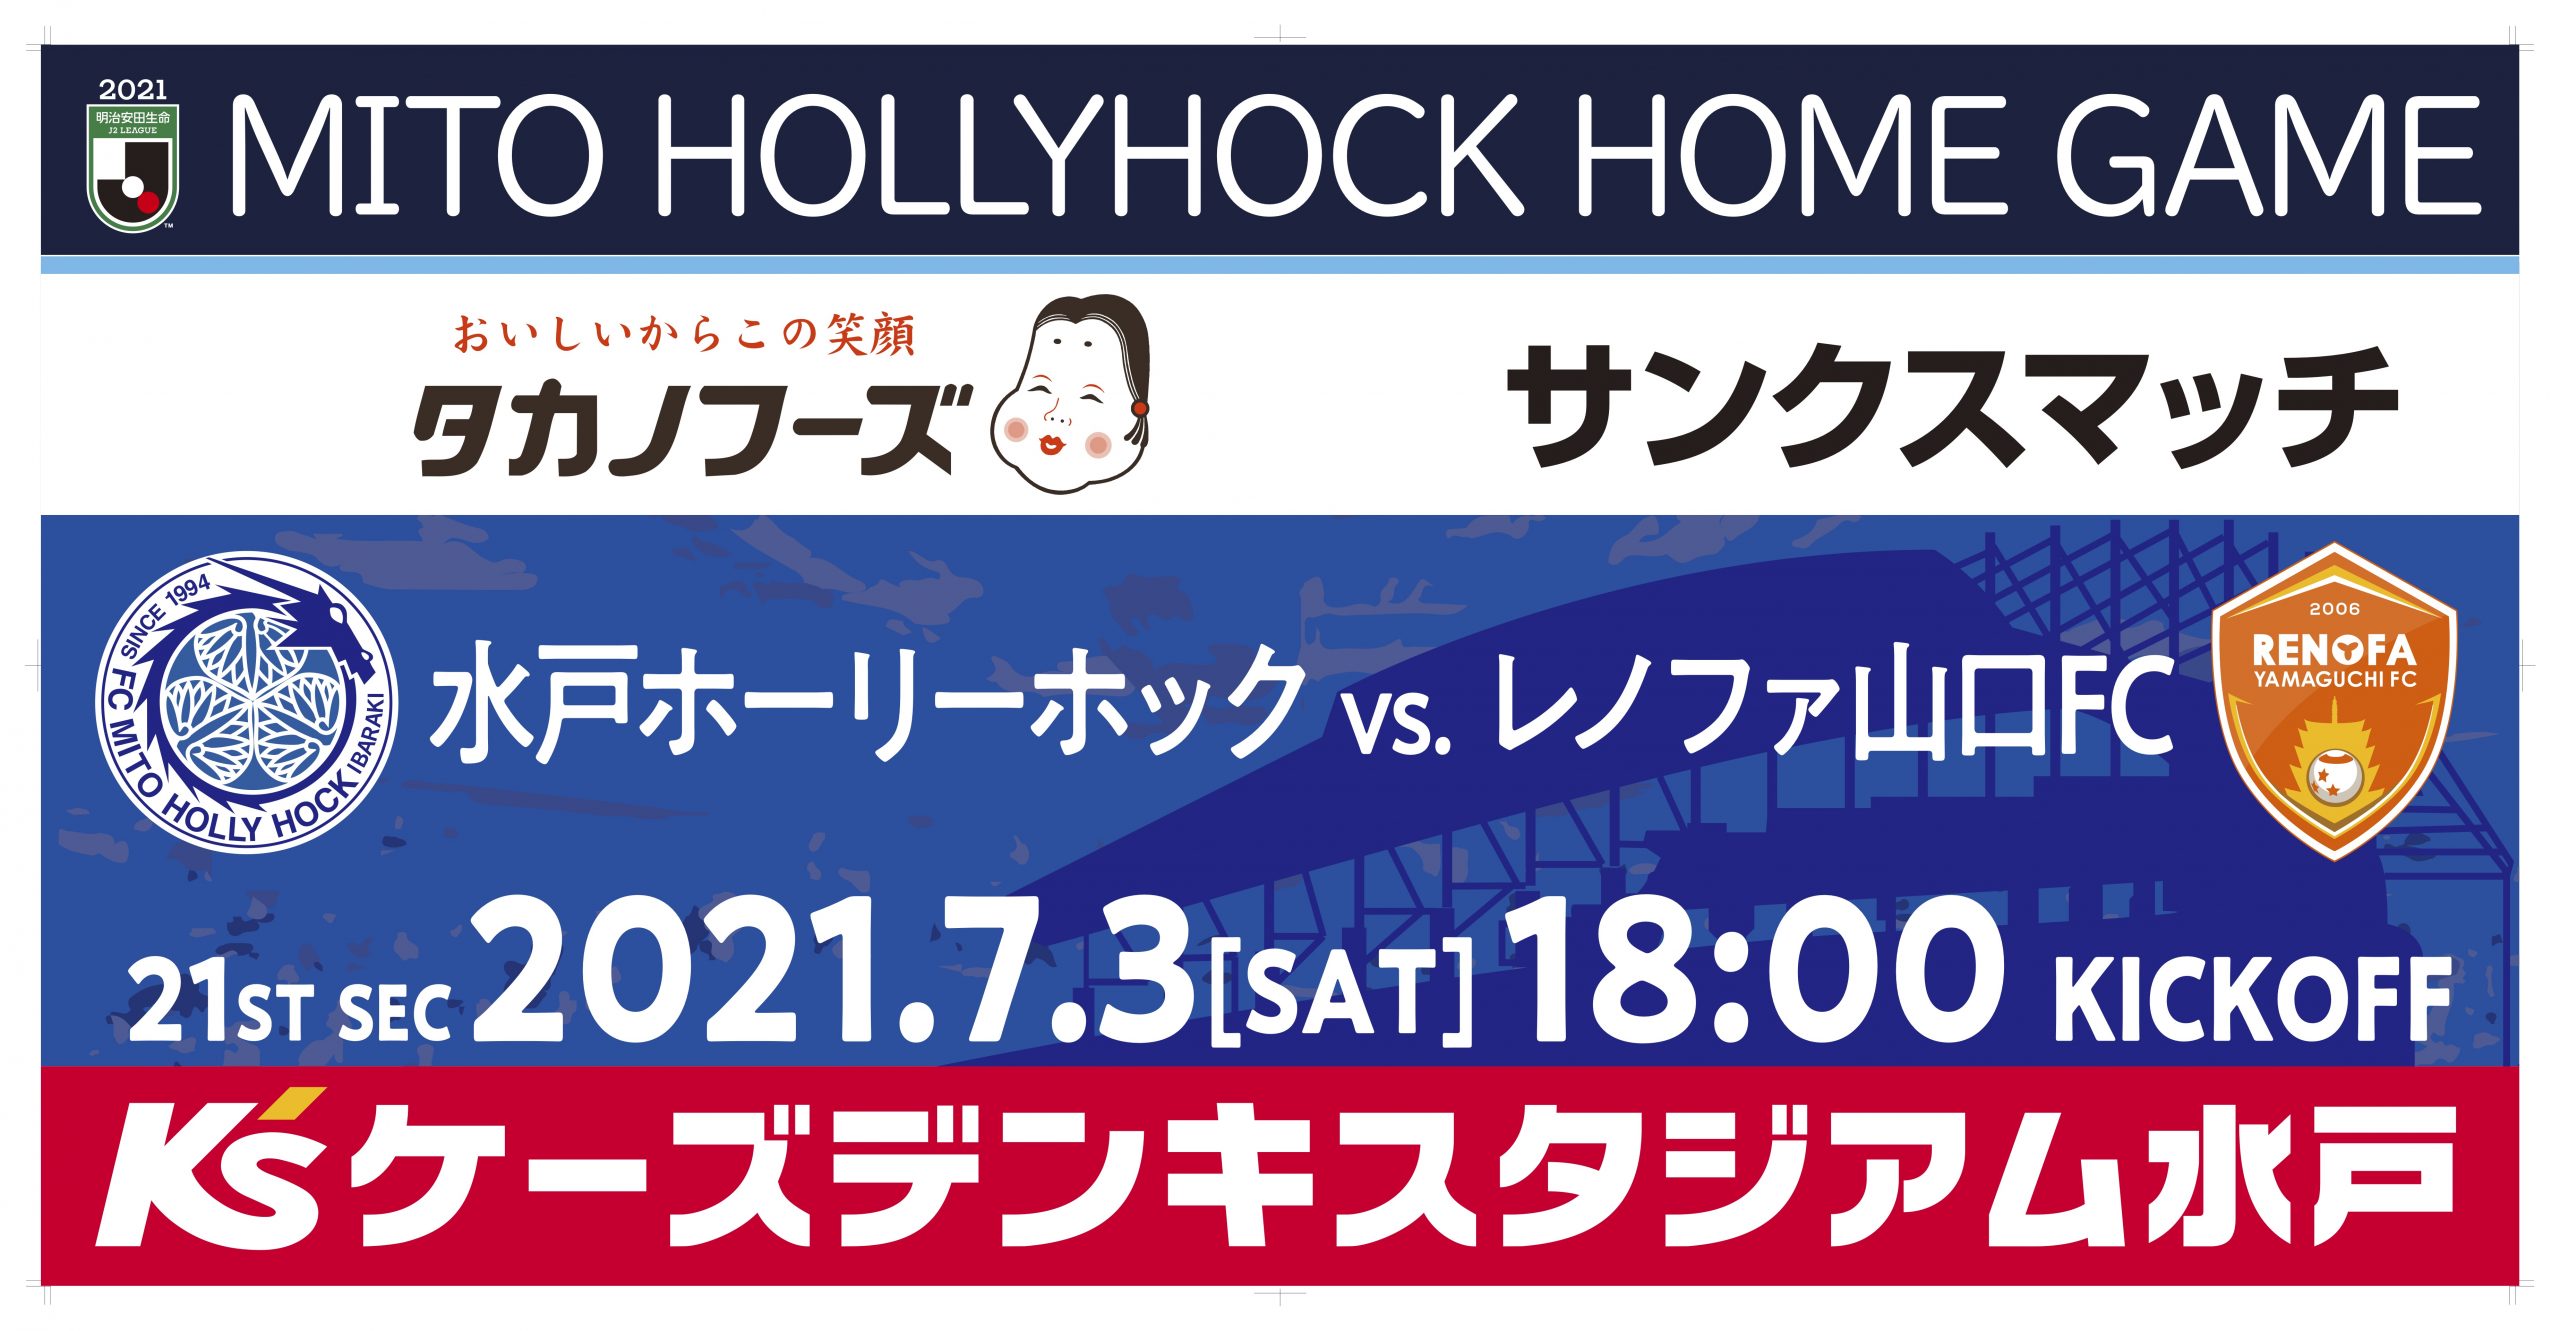 7 3 土 山口戦 タカノフーズサンクスマッチ 開催のお知らせ 水戸ホーリーホック公式サイト